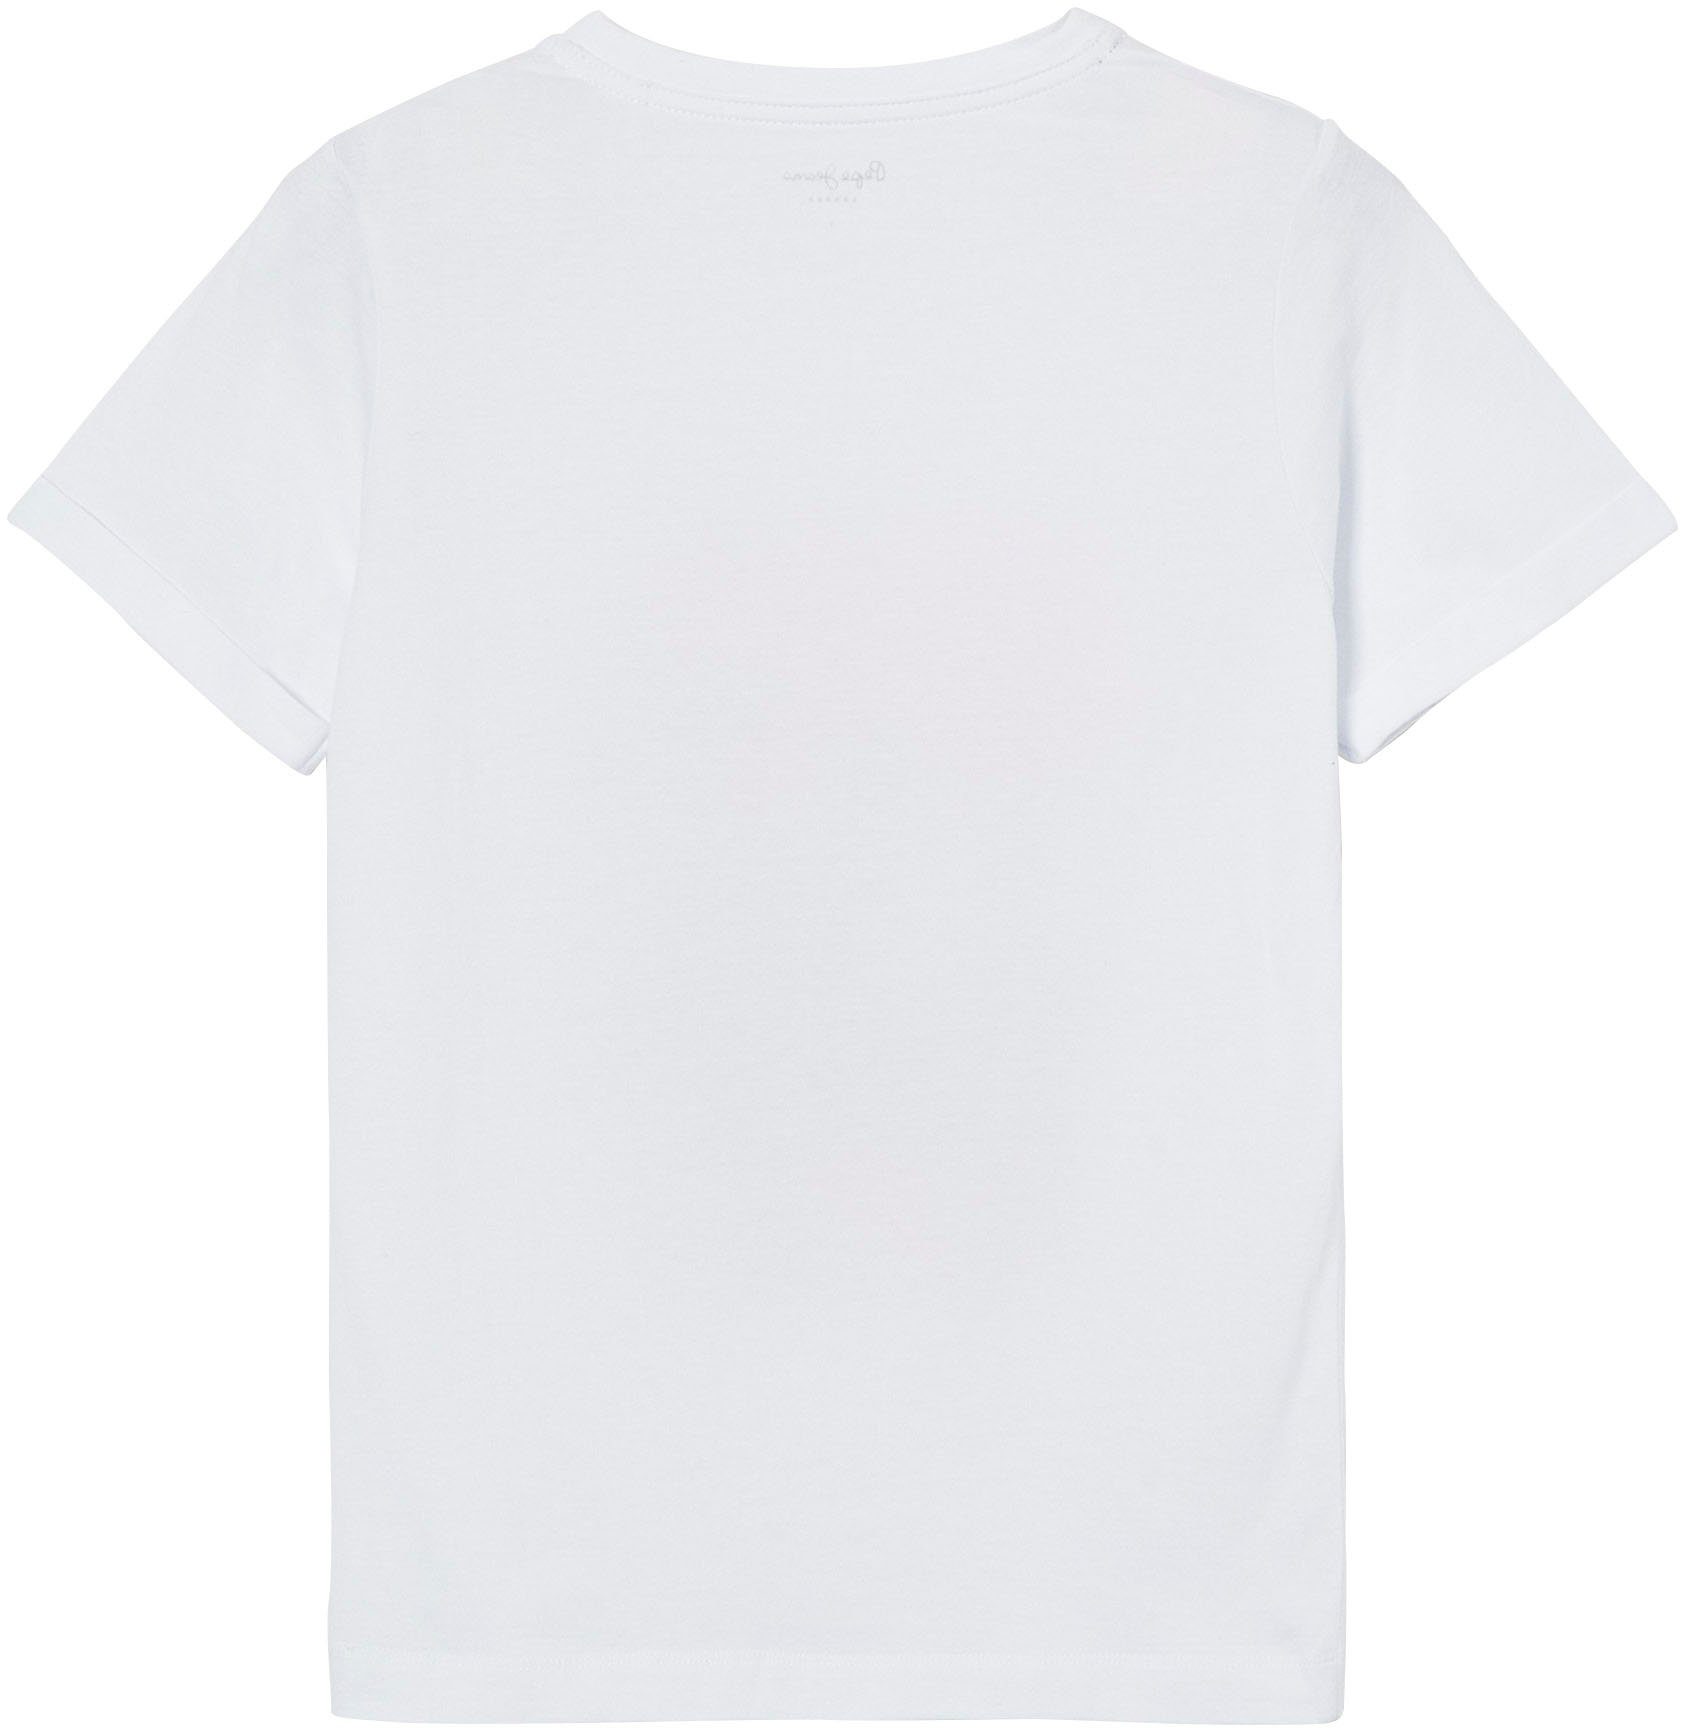 Pepe markentypischem Frontprint in T-Shirt Passform tollem und mit Jeans oversized 800WHITE